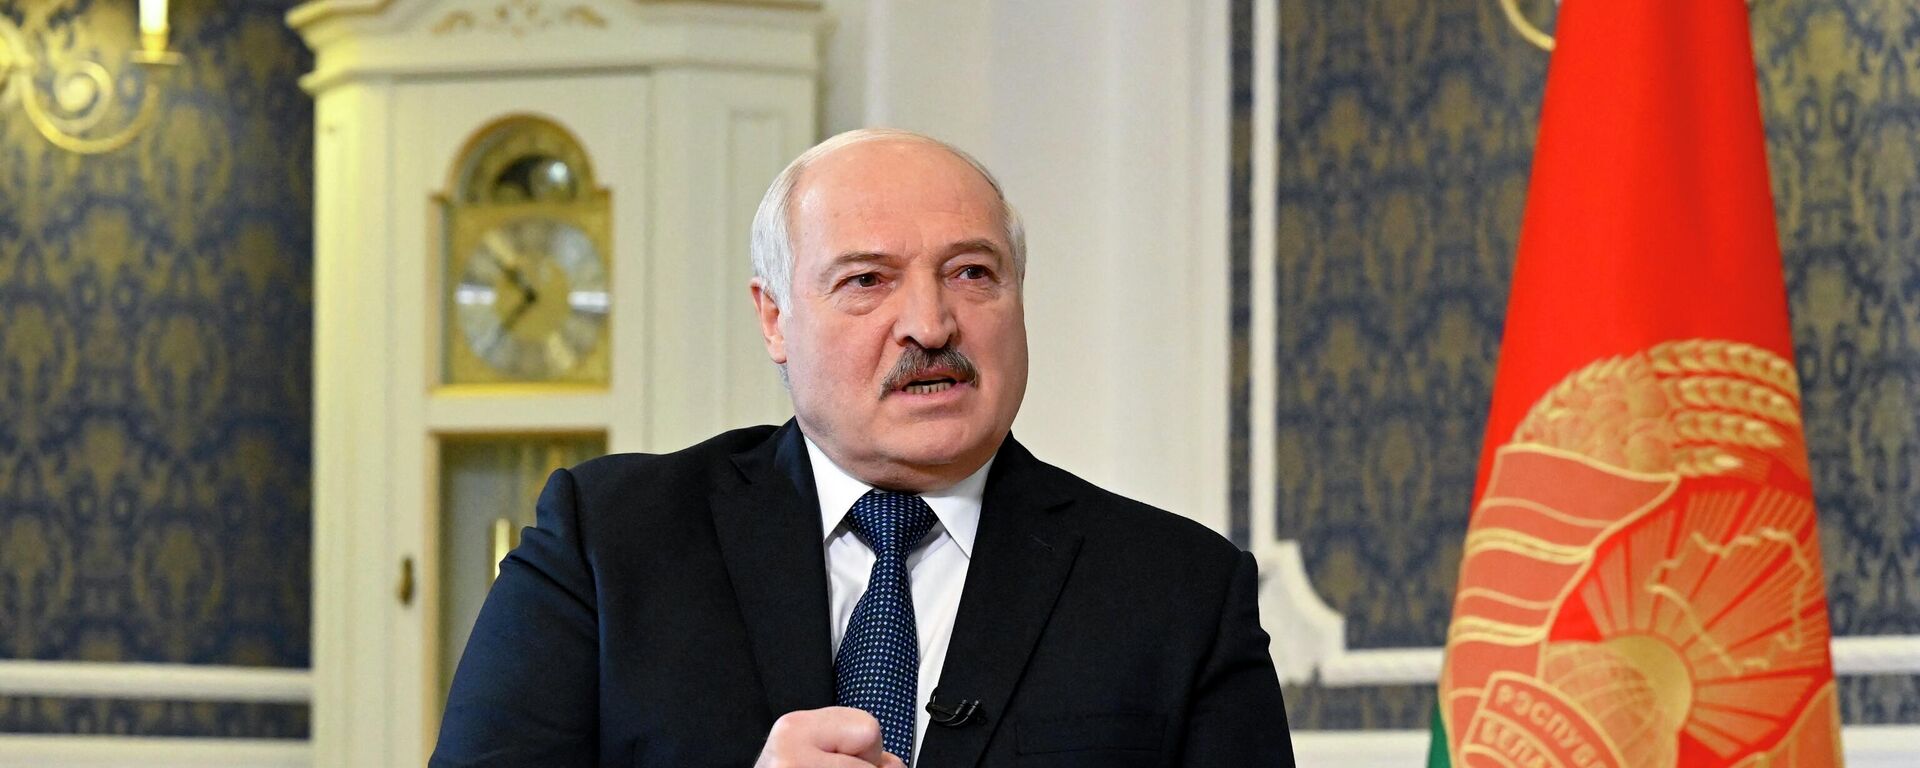 O presidente de Belarus, Alexander Lukashenko, concede uma entrevista exclusiva à Agence France-Presse (AFP) em sua residência, o Palácio da Independência, na capital Minsk, 23 de julho de 2022 - Sputnik Brasil, 1920, 13.10.2022